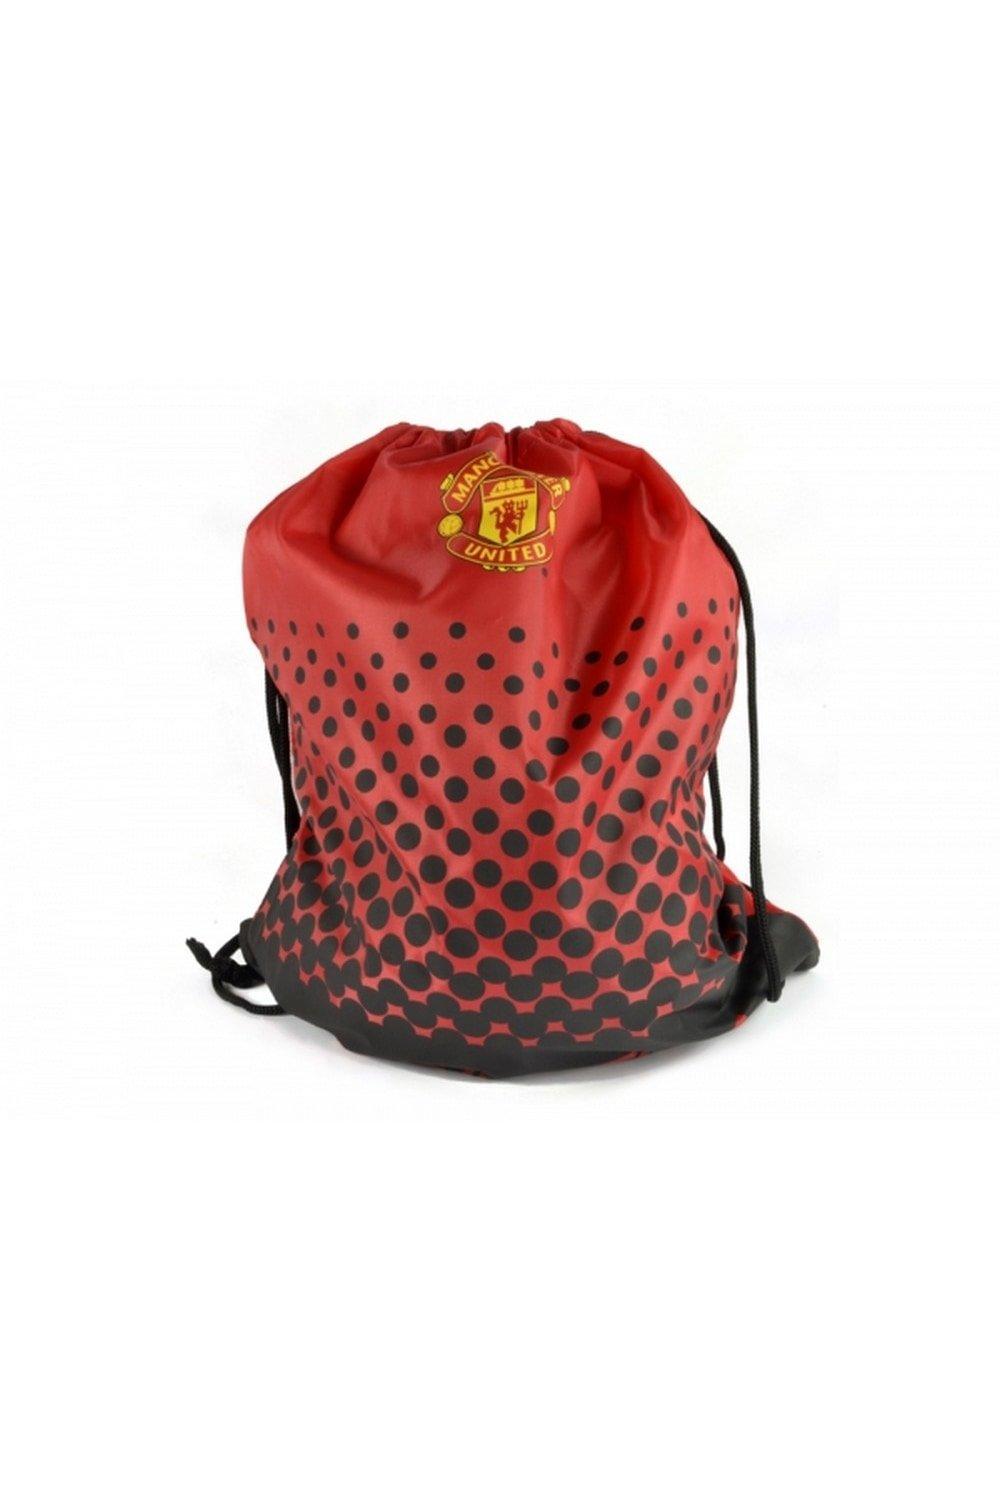 Спортивная сумка Манчестер Юнайтед Manchester United FC, красный